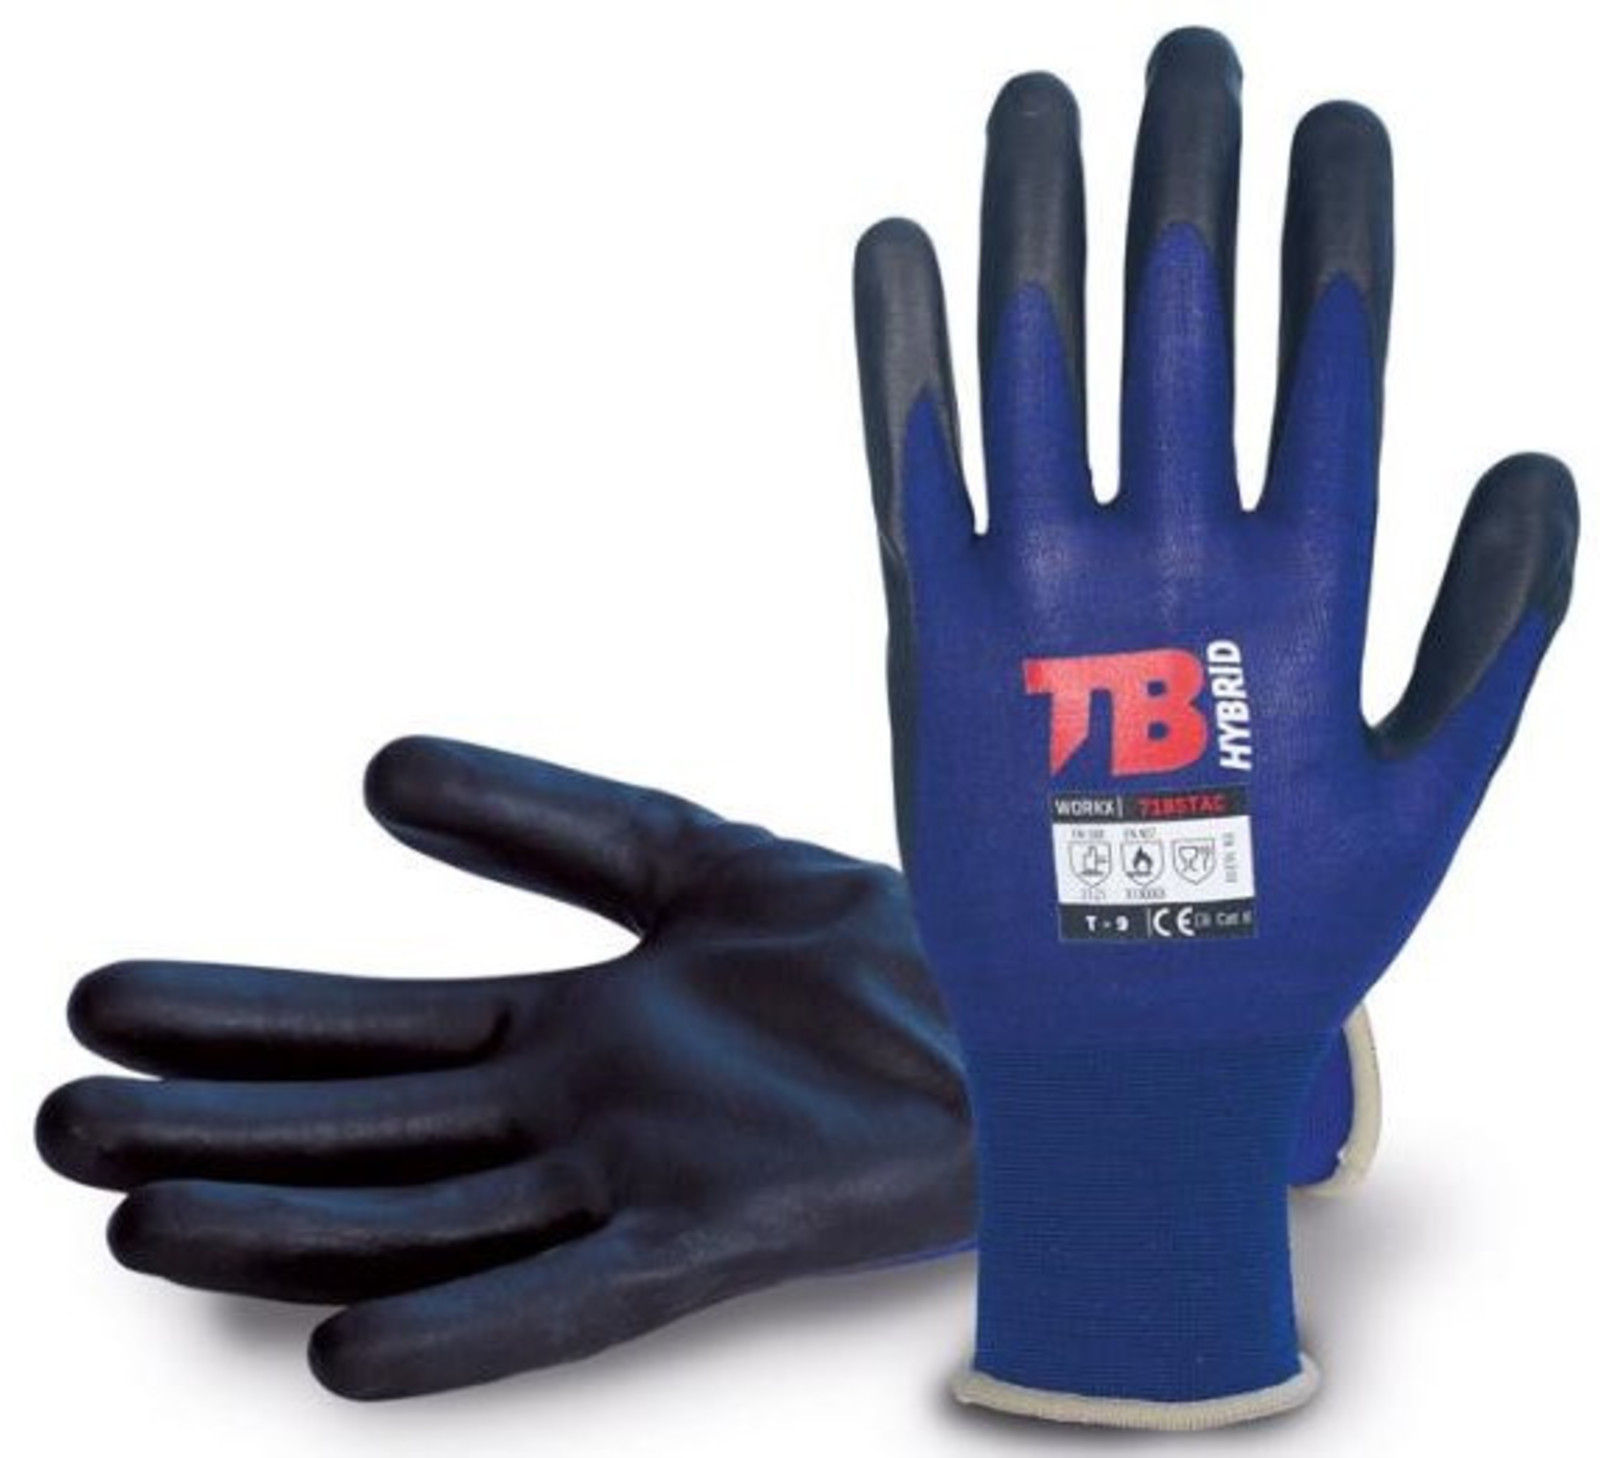 Nylonové rukavice TB 718 Stac - veľkosť: 9/L